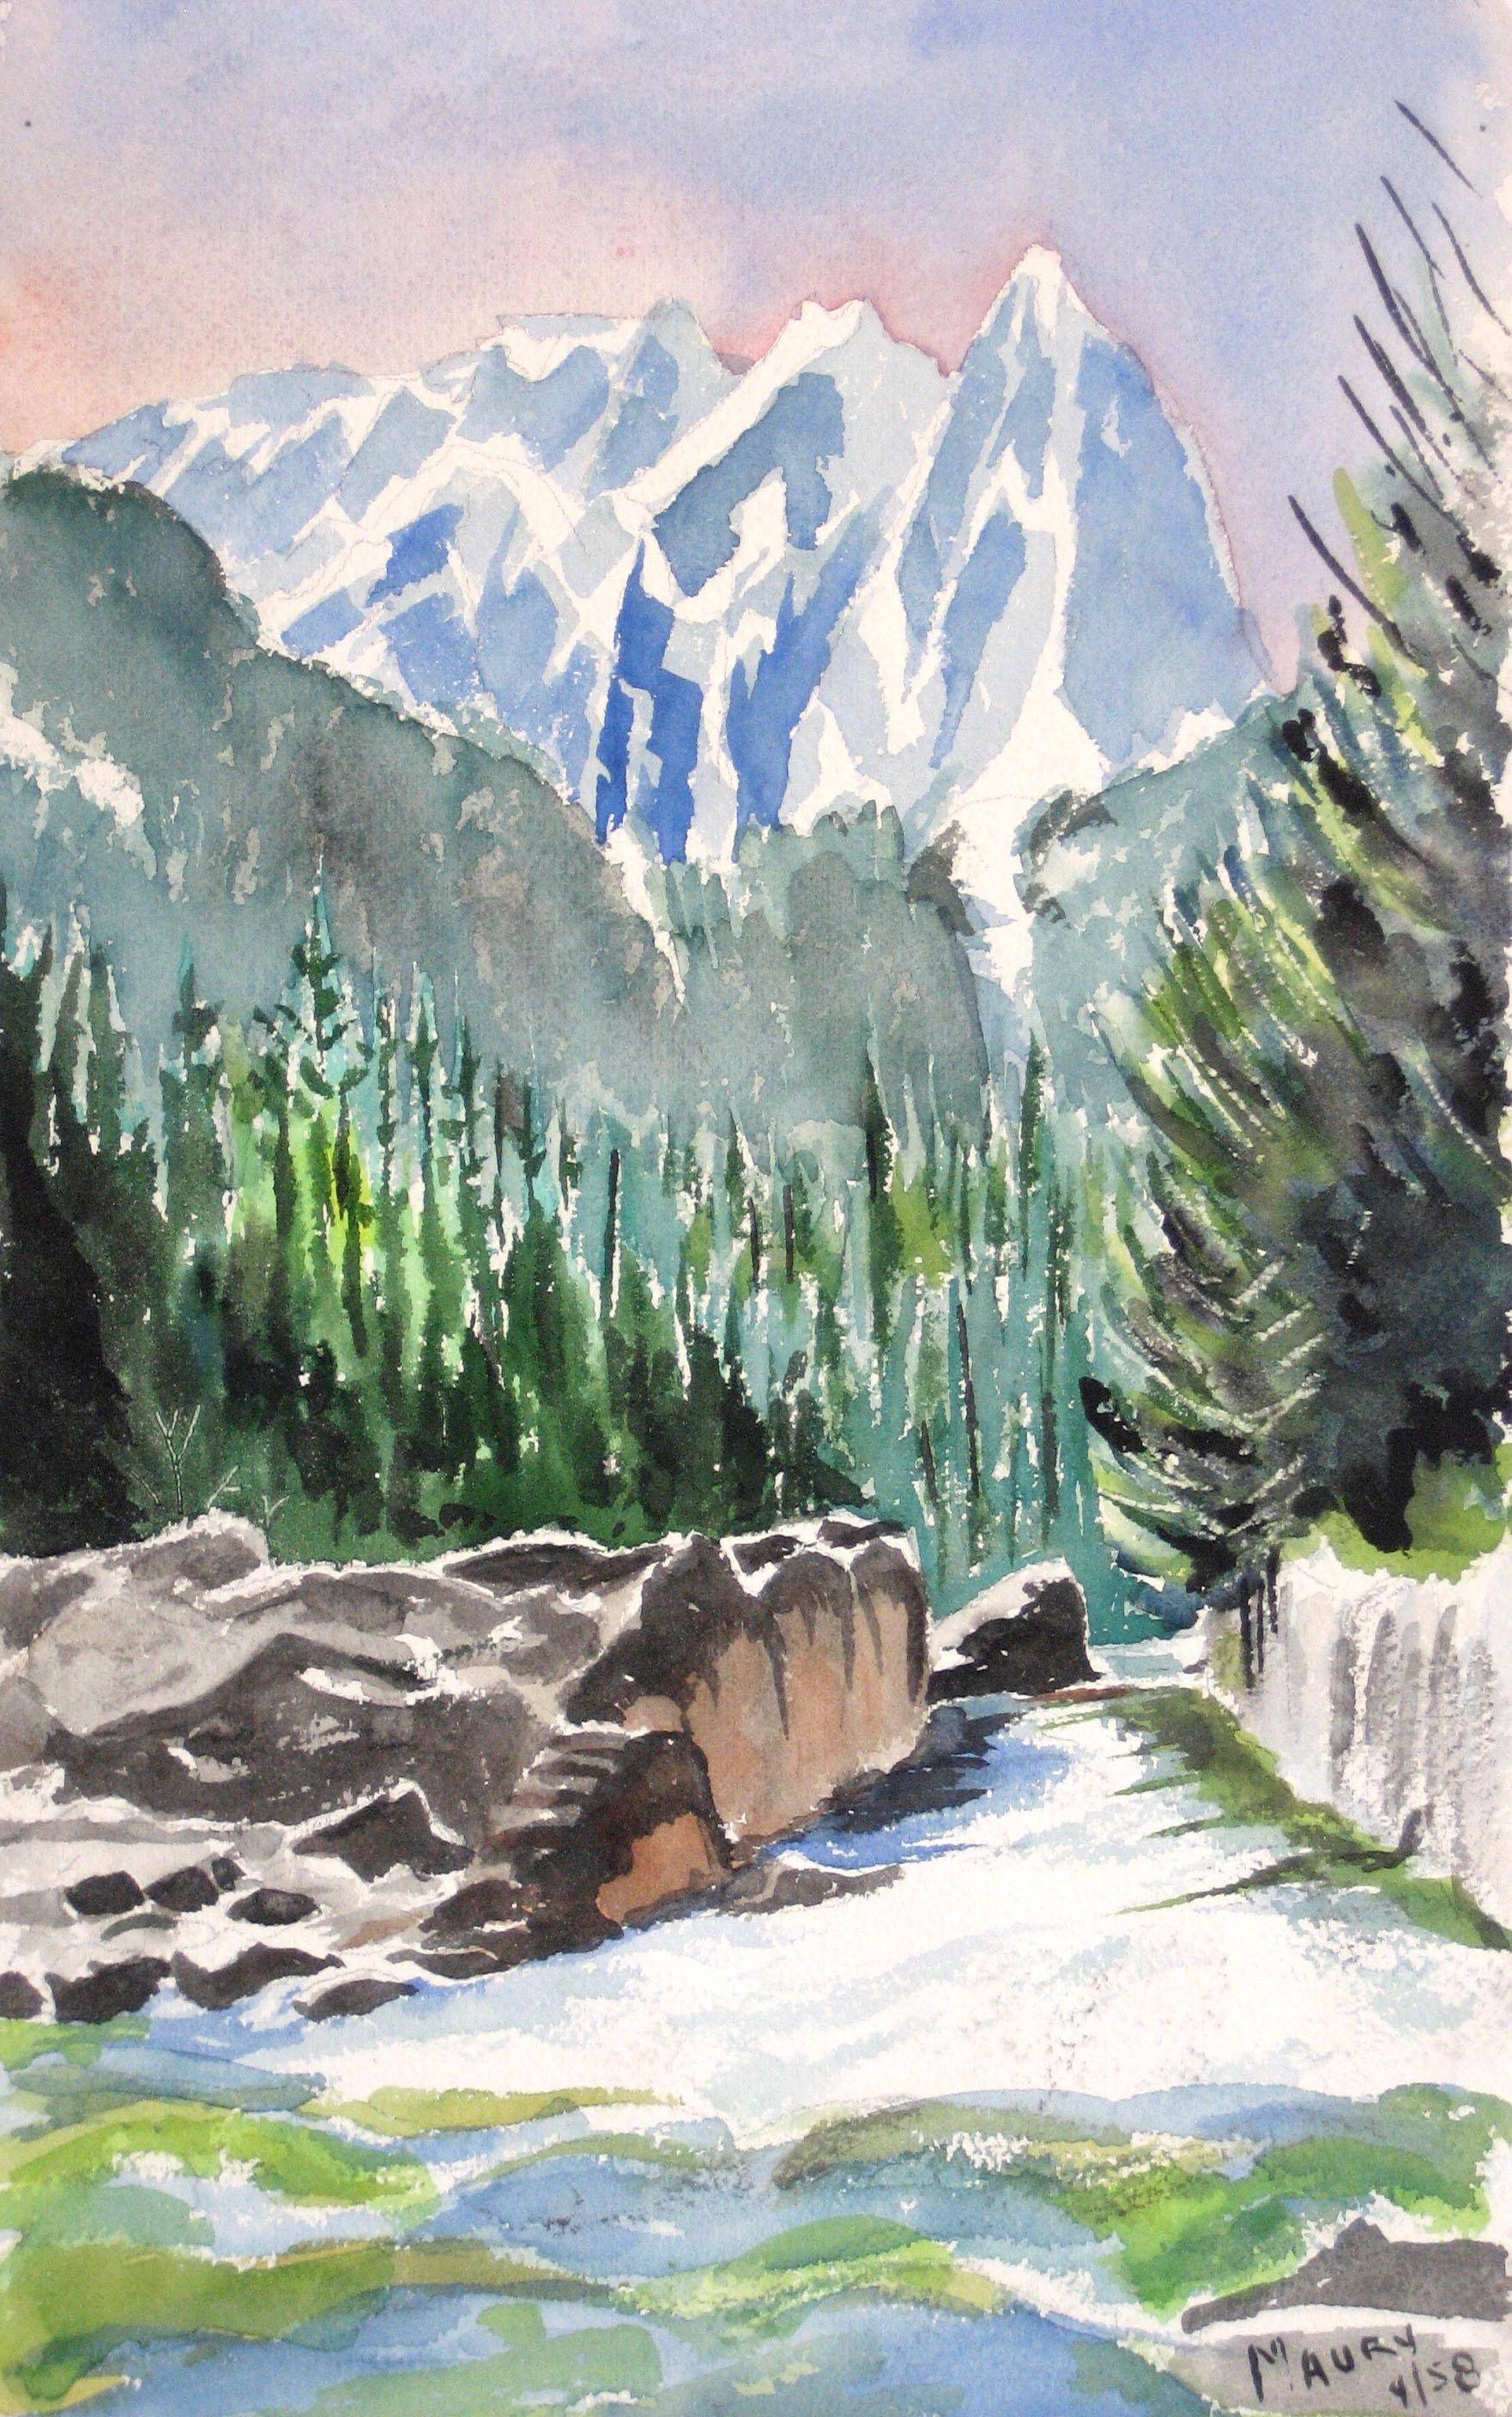 Mary Pomeroy Landscape Art - 1960s Mountain Landscape in Watercolor